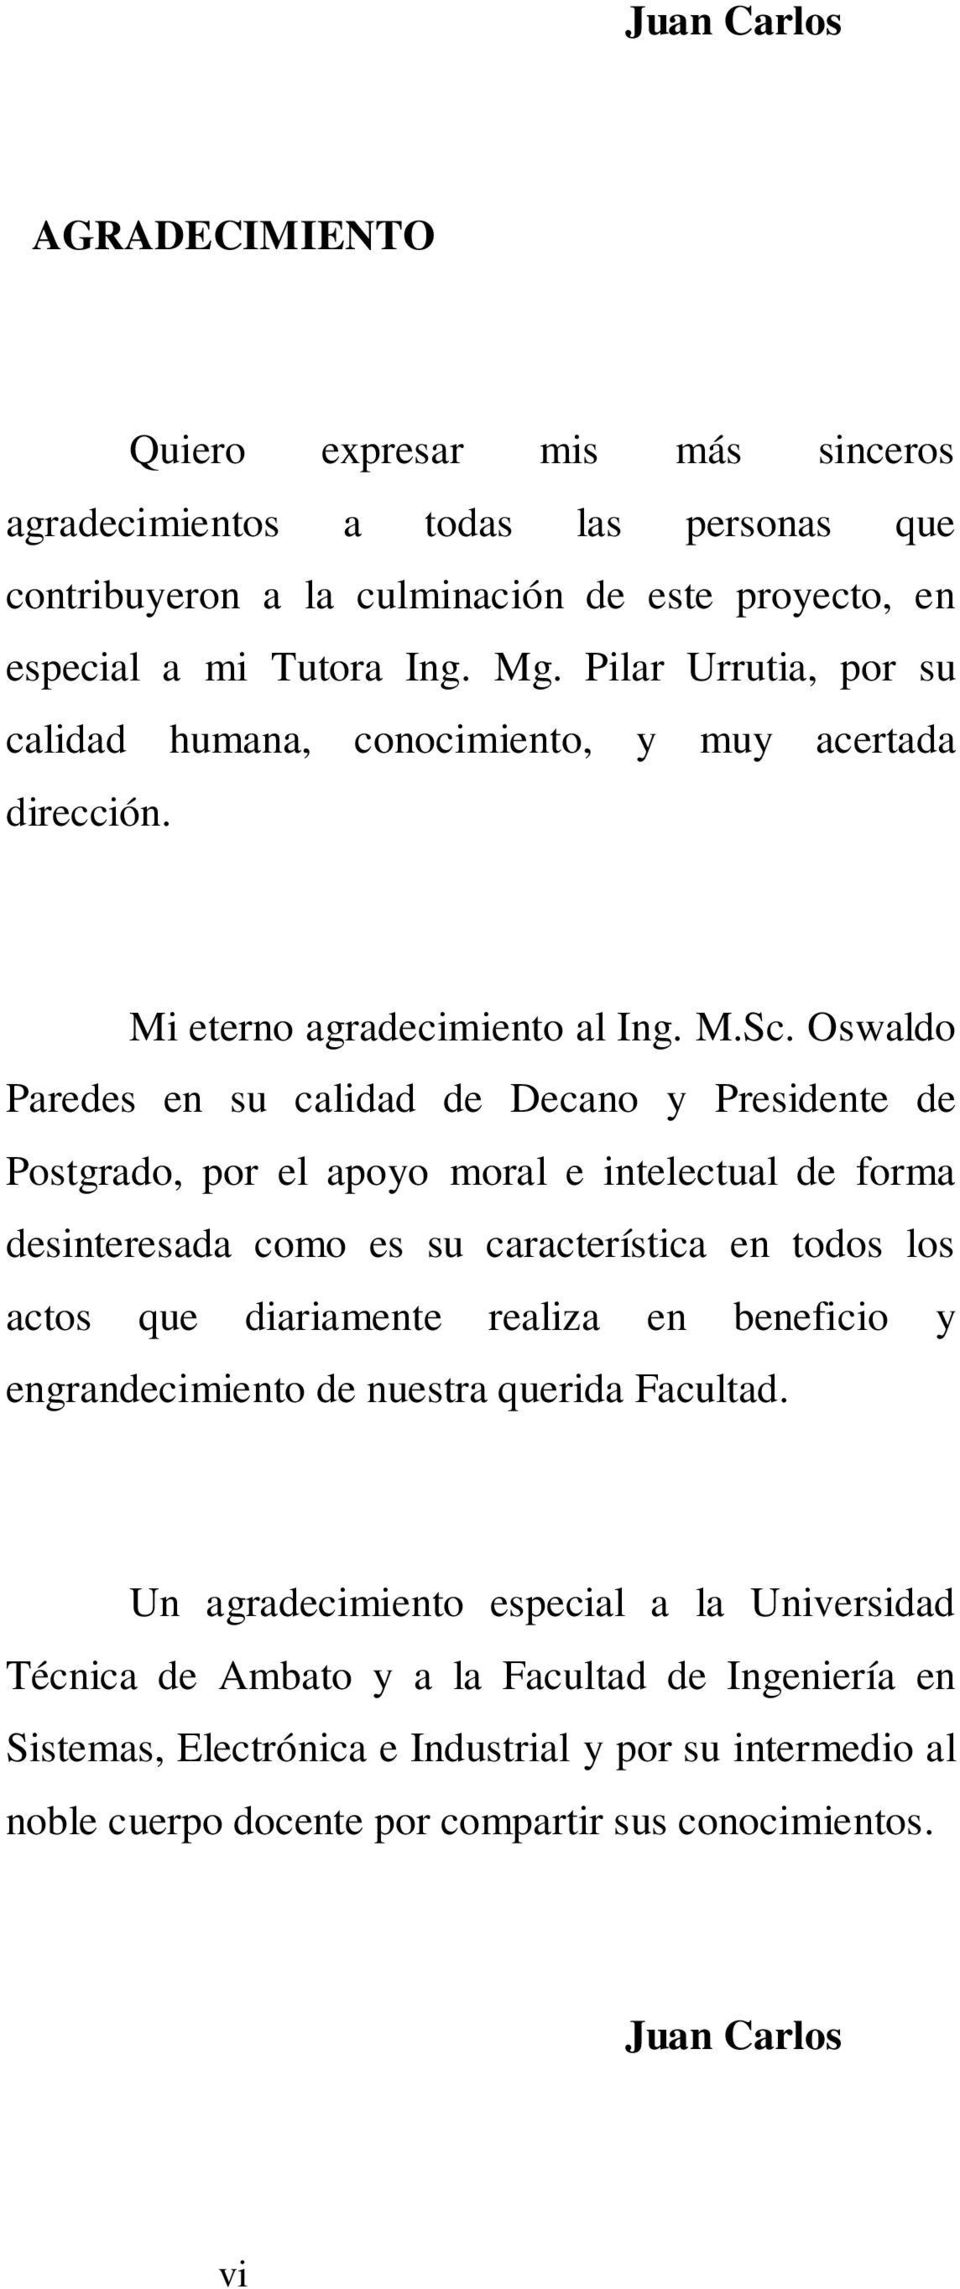 Oswaldo Paredes en su calidad de Decano y Presidente de Postgrado, por el apoyo moral e intelectual de forma desinteresada como es su característica en todos los actos que diariamente realiza